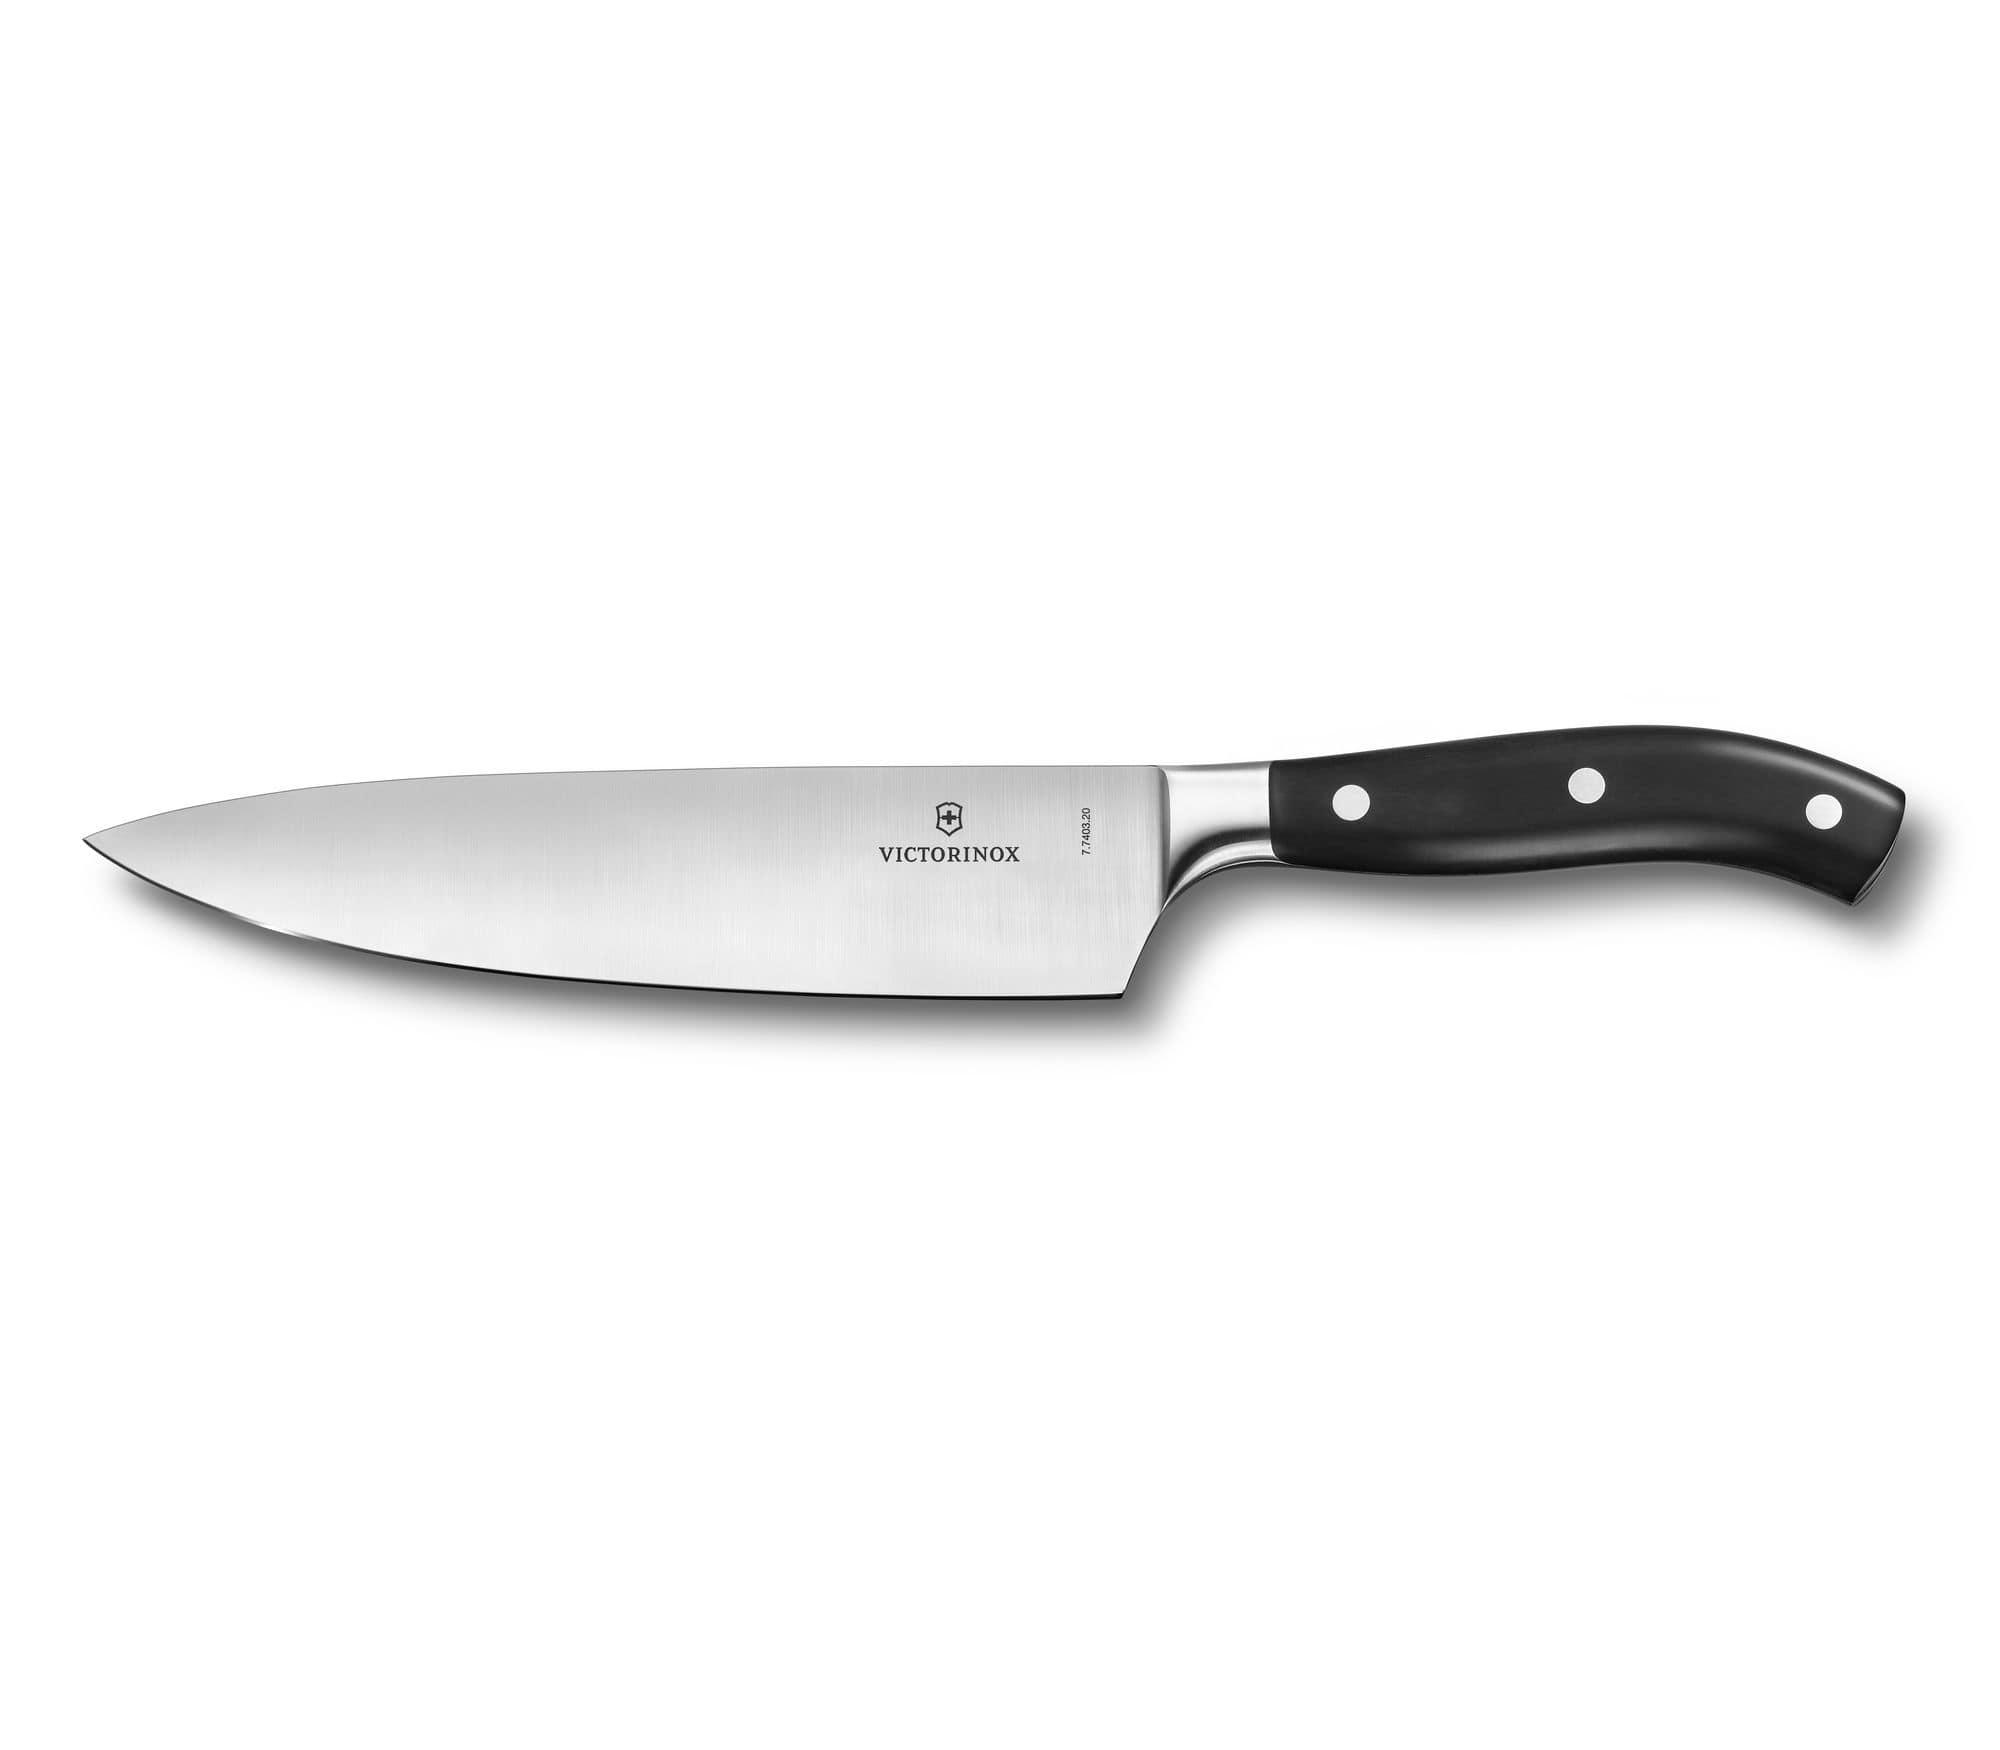 سكين مطبخ حادة 20 سم فيكتورنوكس Victorinox Grand Maitre Forged Chef'S Knife Blade